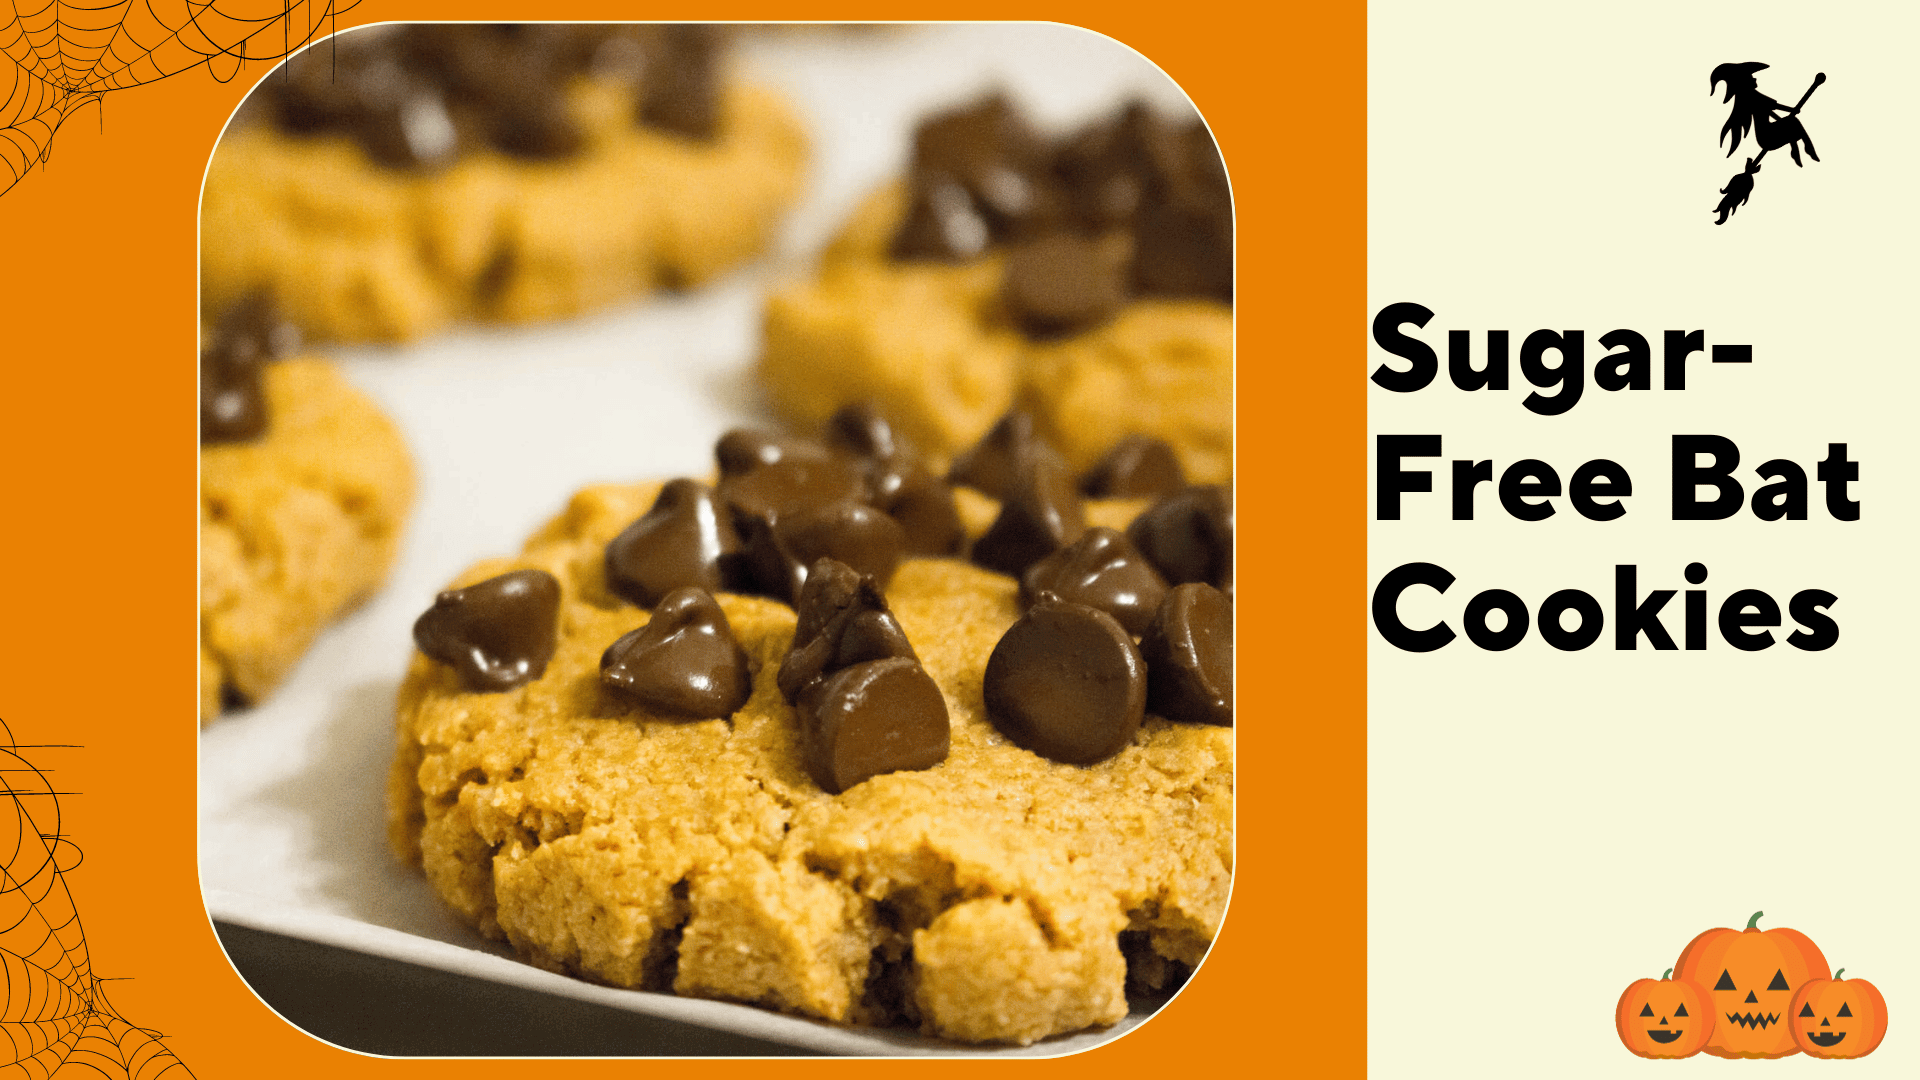 Sugar-Free Bat Cookies